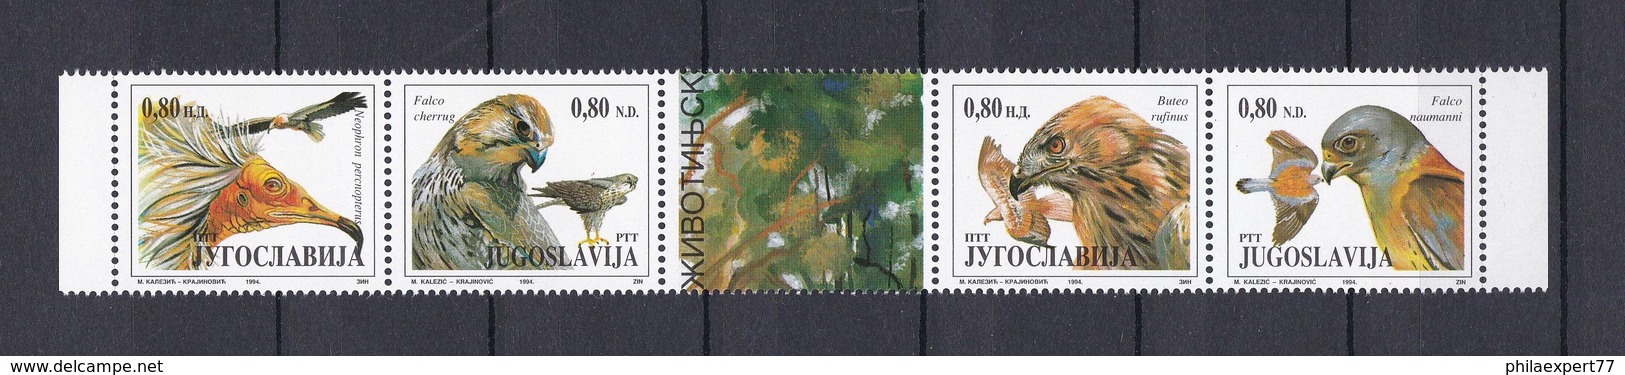 Jugoslawien - 1994 - Michel Nr. 2647/50 - Fünferstreifen - Postfrisch - Ungebraucht